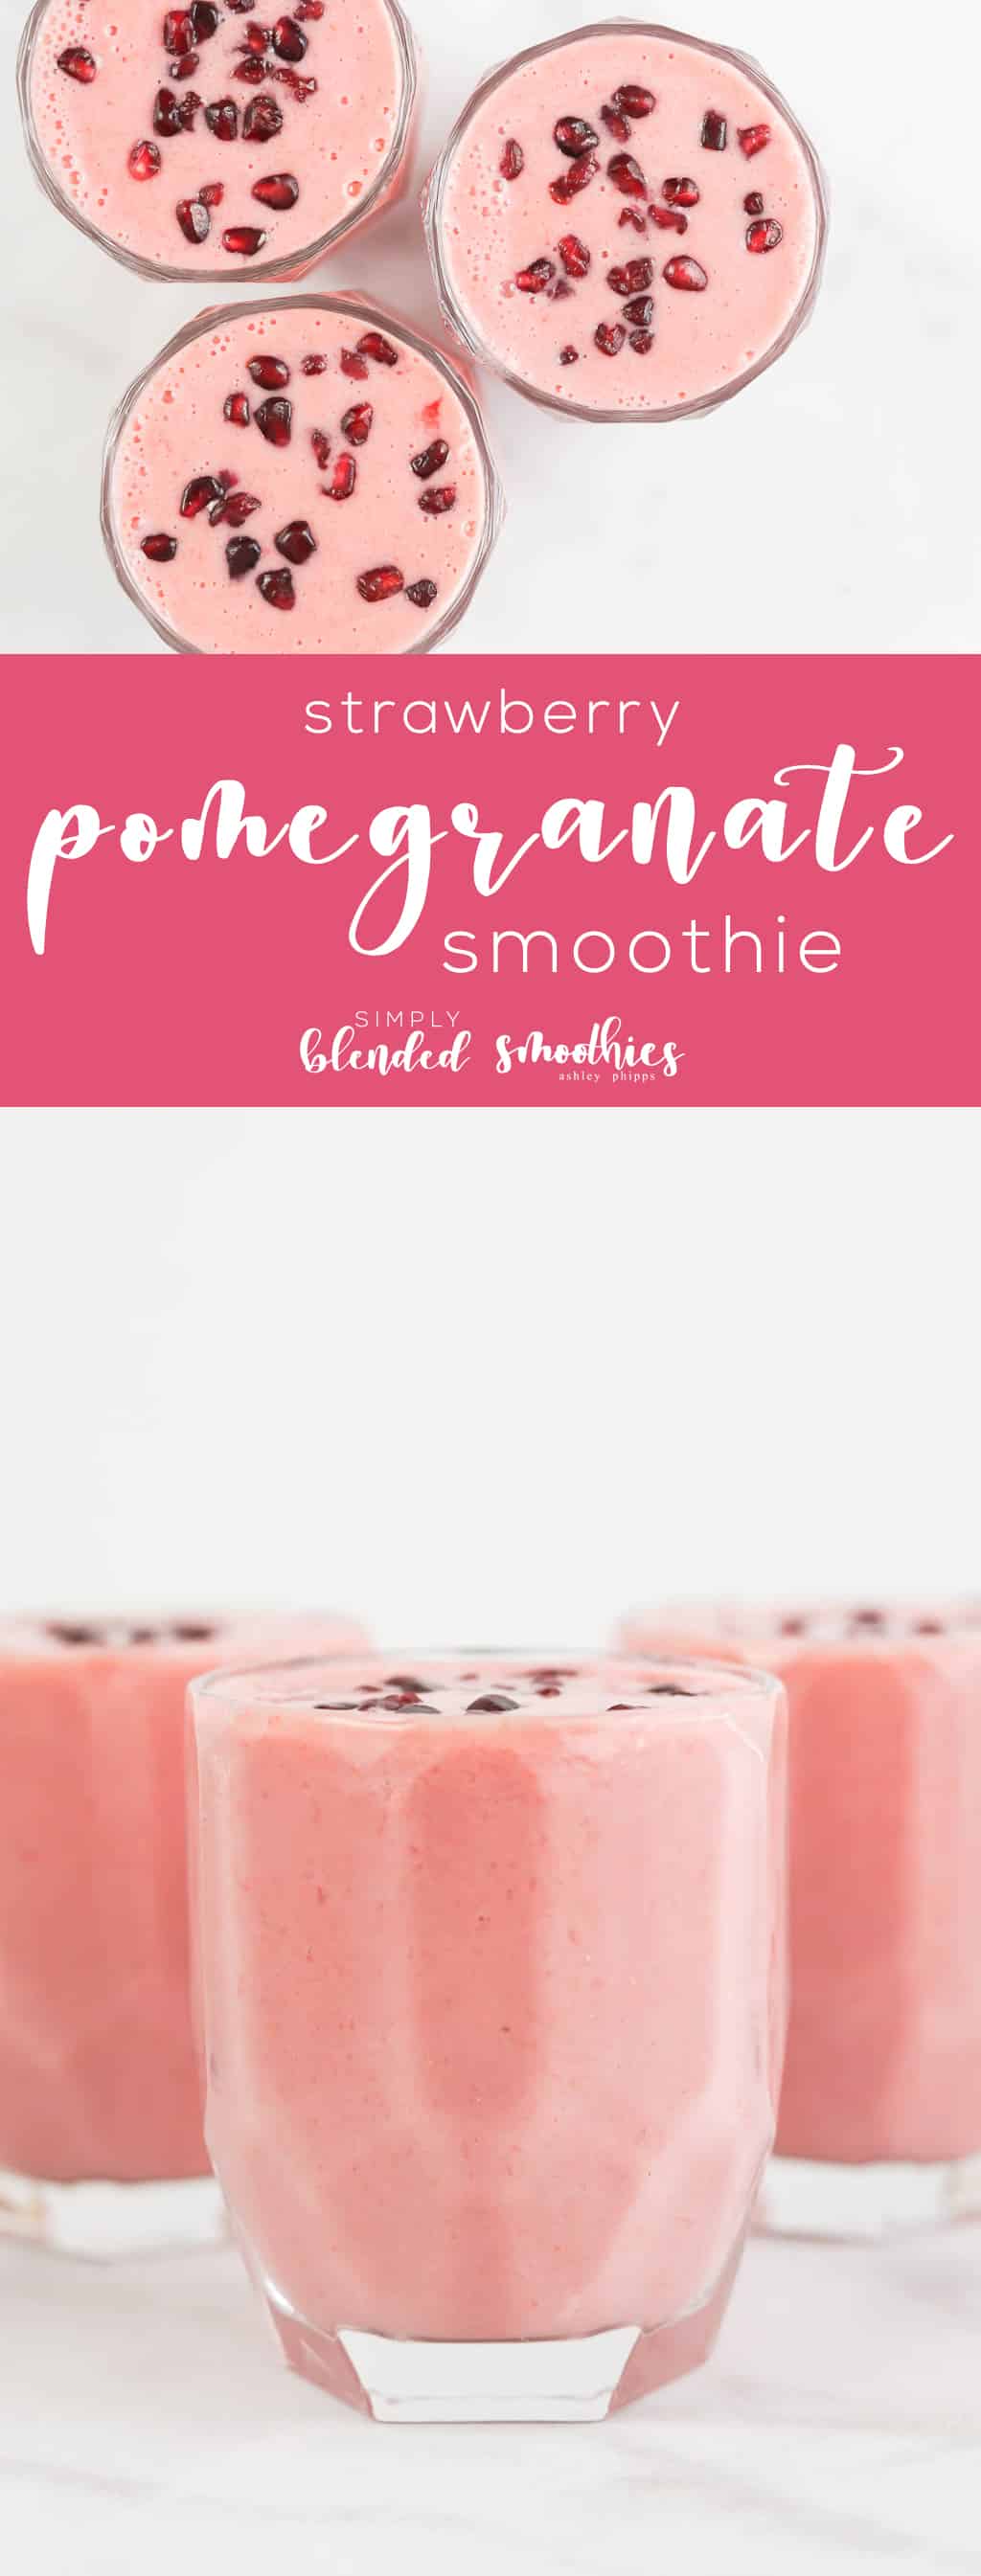 Strawberry Pomegranate Smoothie - Smoothie Recipes